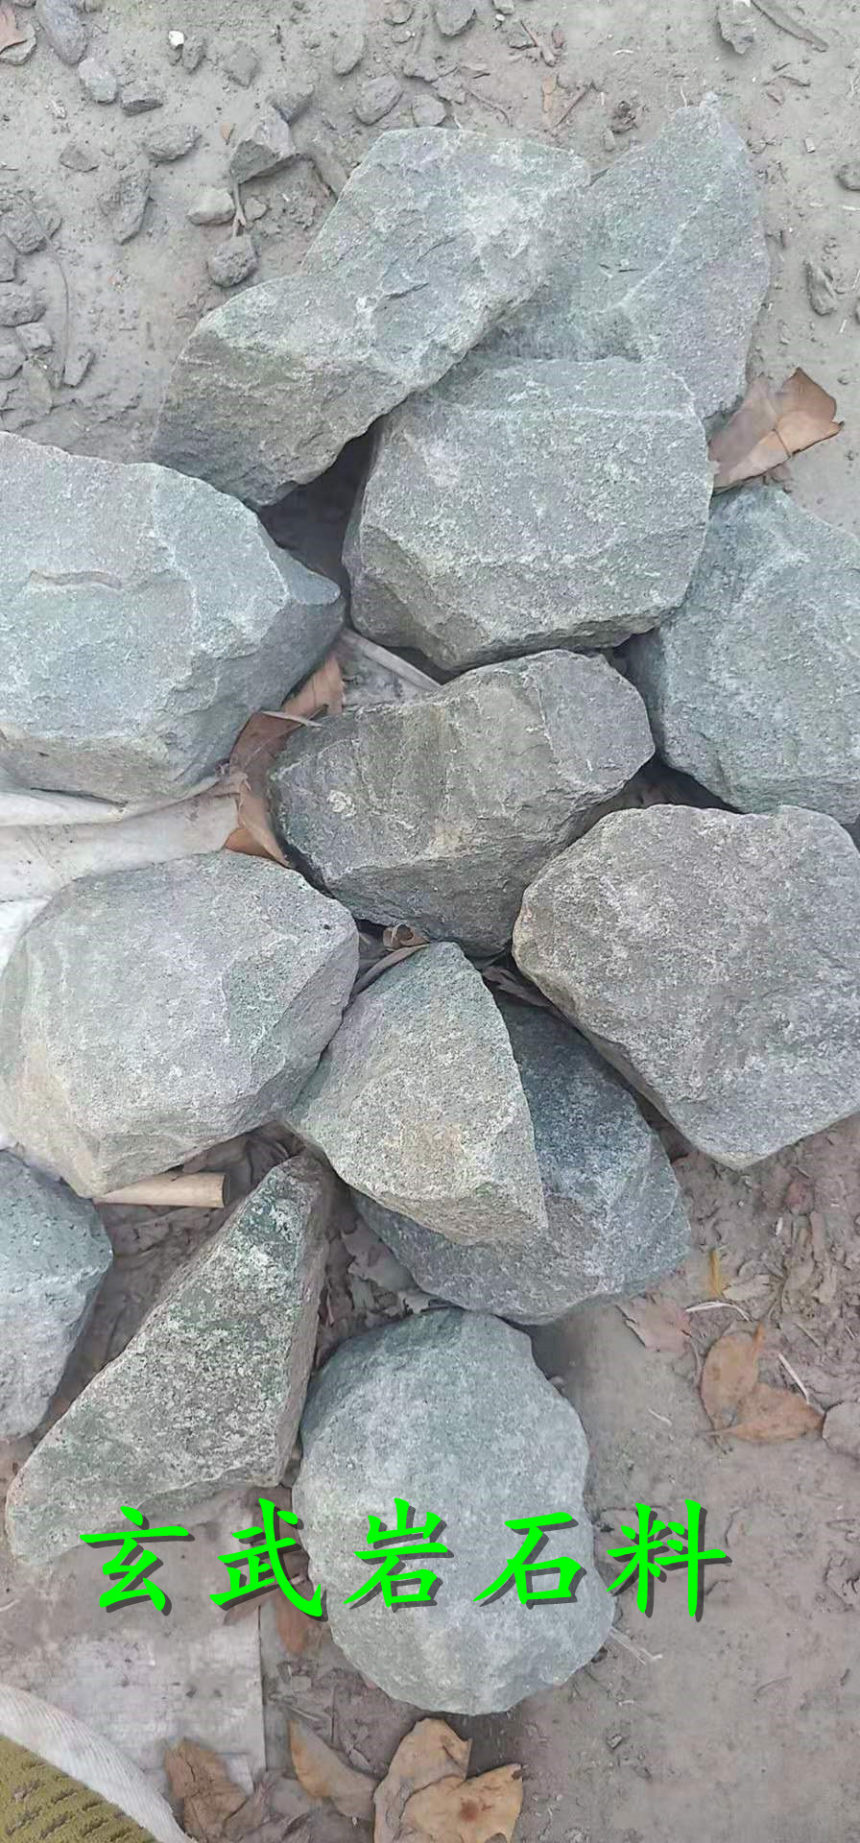 花岗岩碎石沙河多少钱一立方米——股份集团